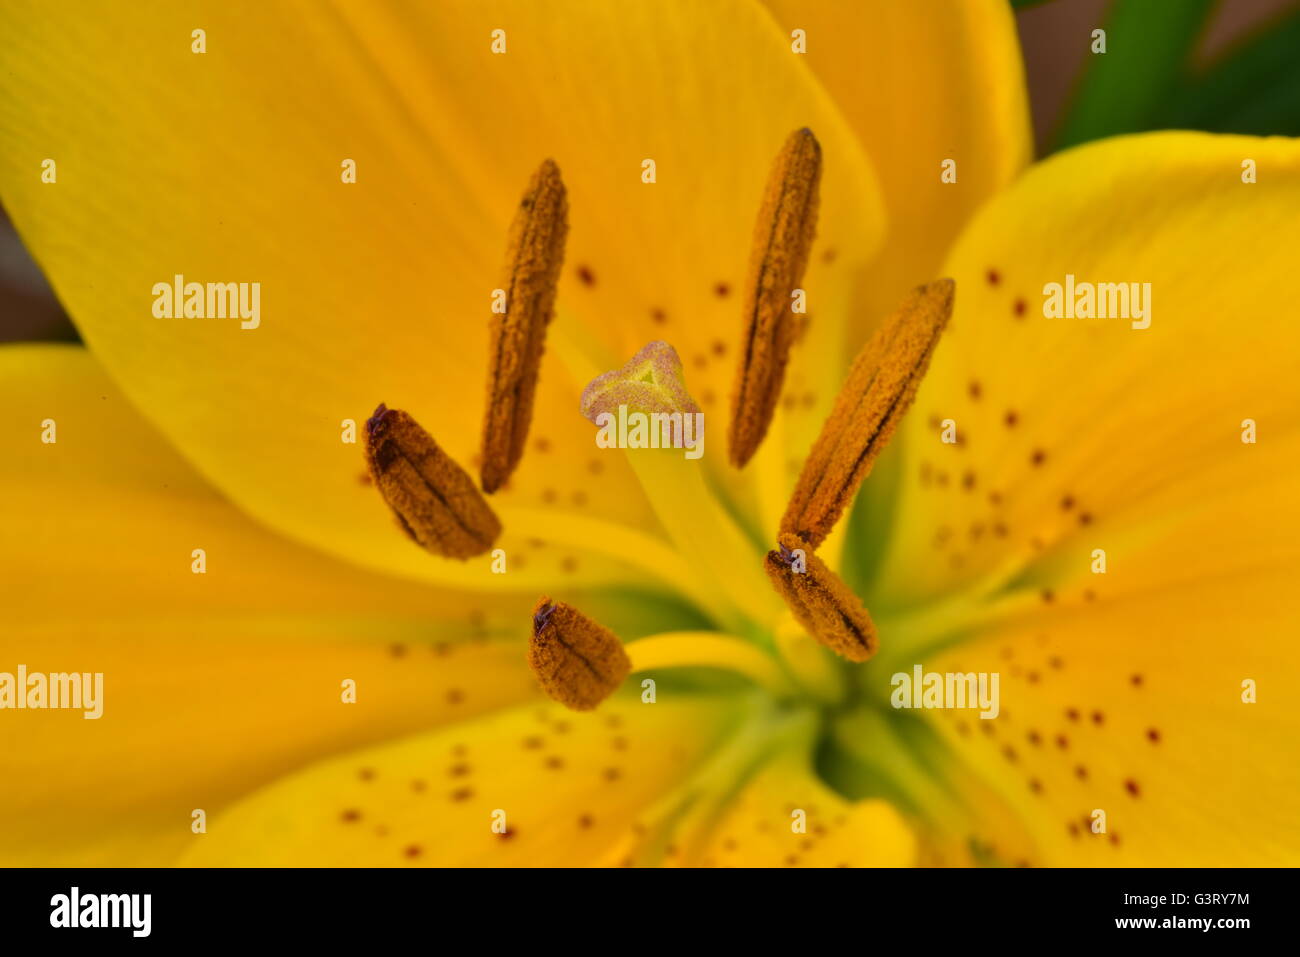 Close-up pictur du lis jaune, Belladonna (Orienpet Lily) montrant les pétales, la stigmatisation, les sépales, étamines, anthères pollen et filament. Banque D'Images